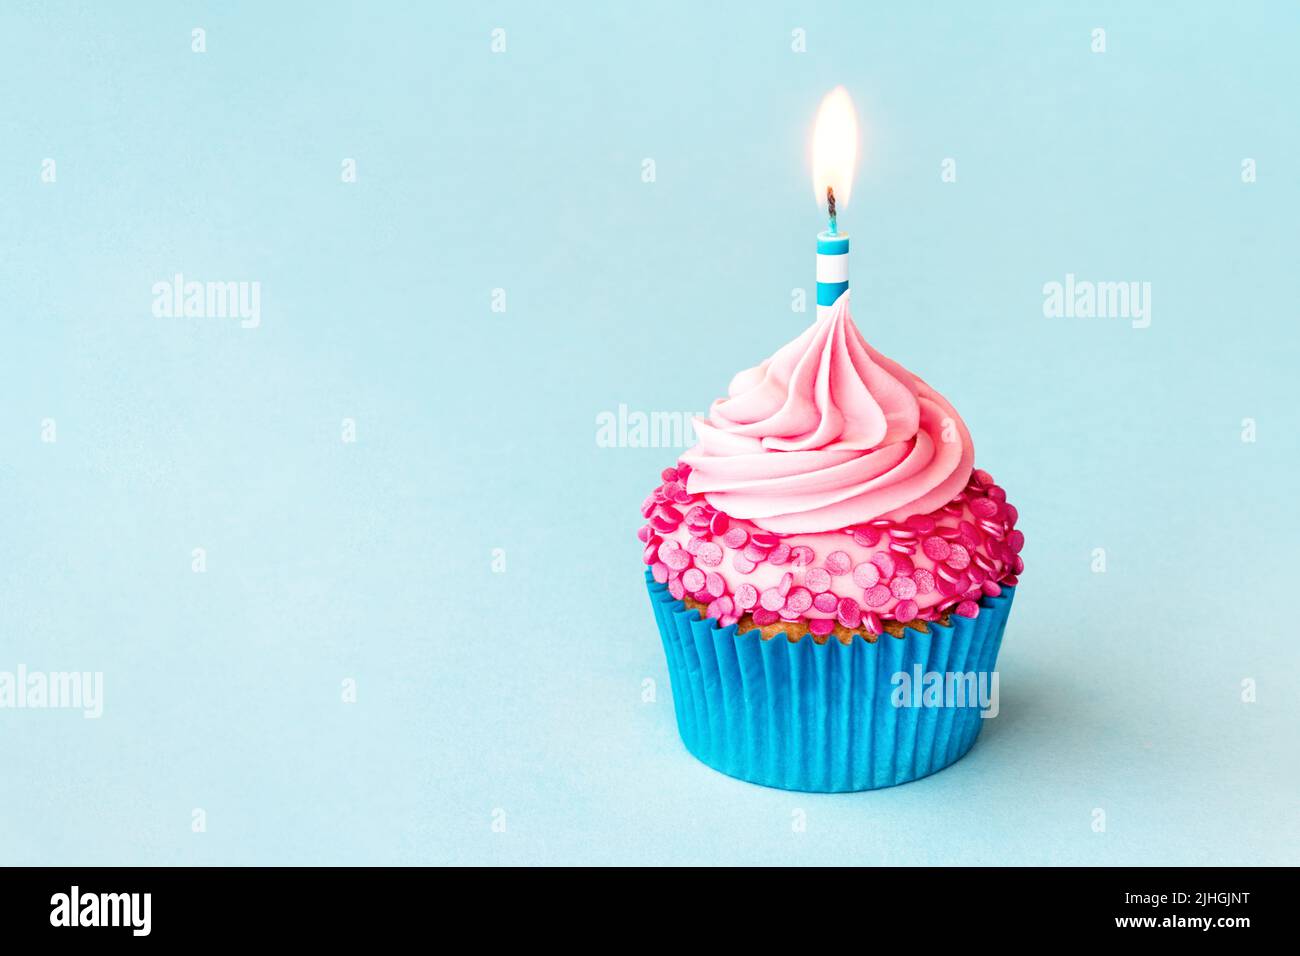 Gâteau d'anniversaire avec bougie d'anniversaire rayée et saupoudrer de rose sur fond bleu Banque D'Images